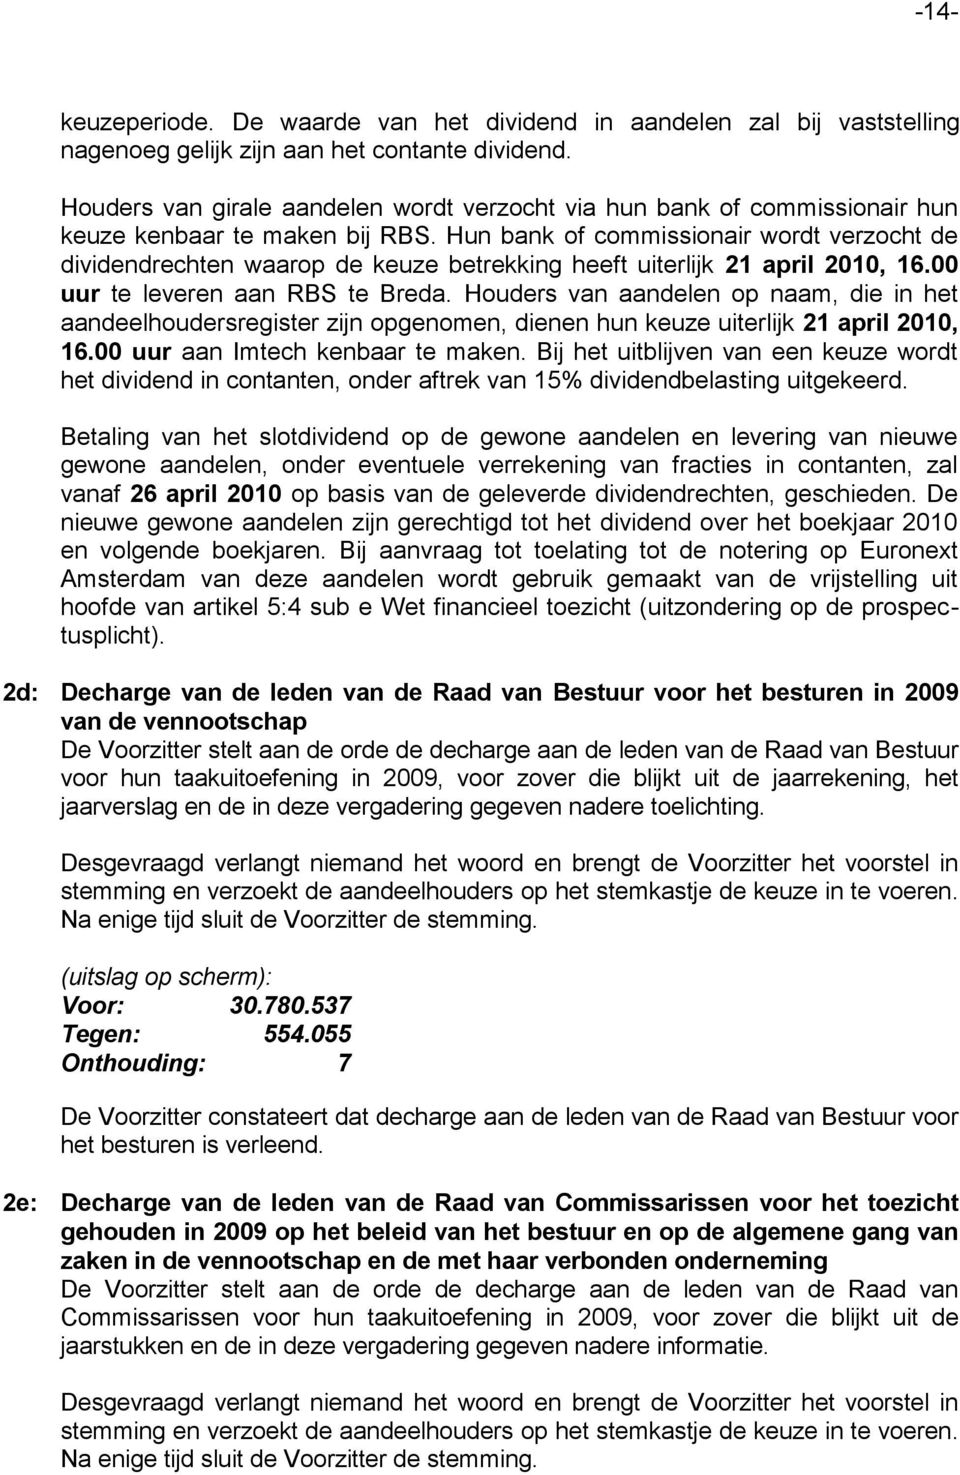 Hun bank of commissionair wordt verzocht de dividendrechten waarop de keuze betrekking heeft uiterlijk 21 april 2010, 16.00 uur te leveren aan RBS te Breda.